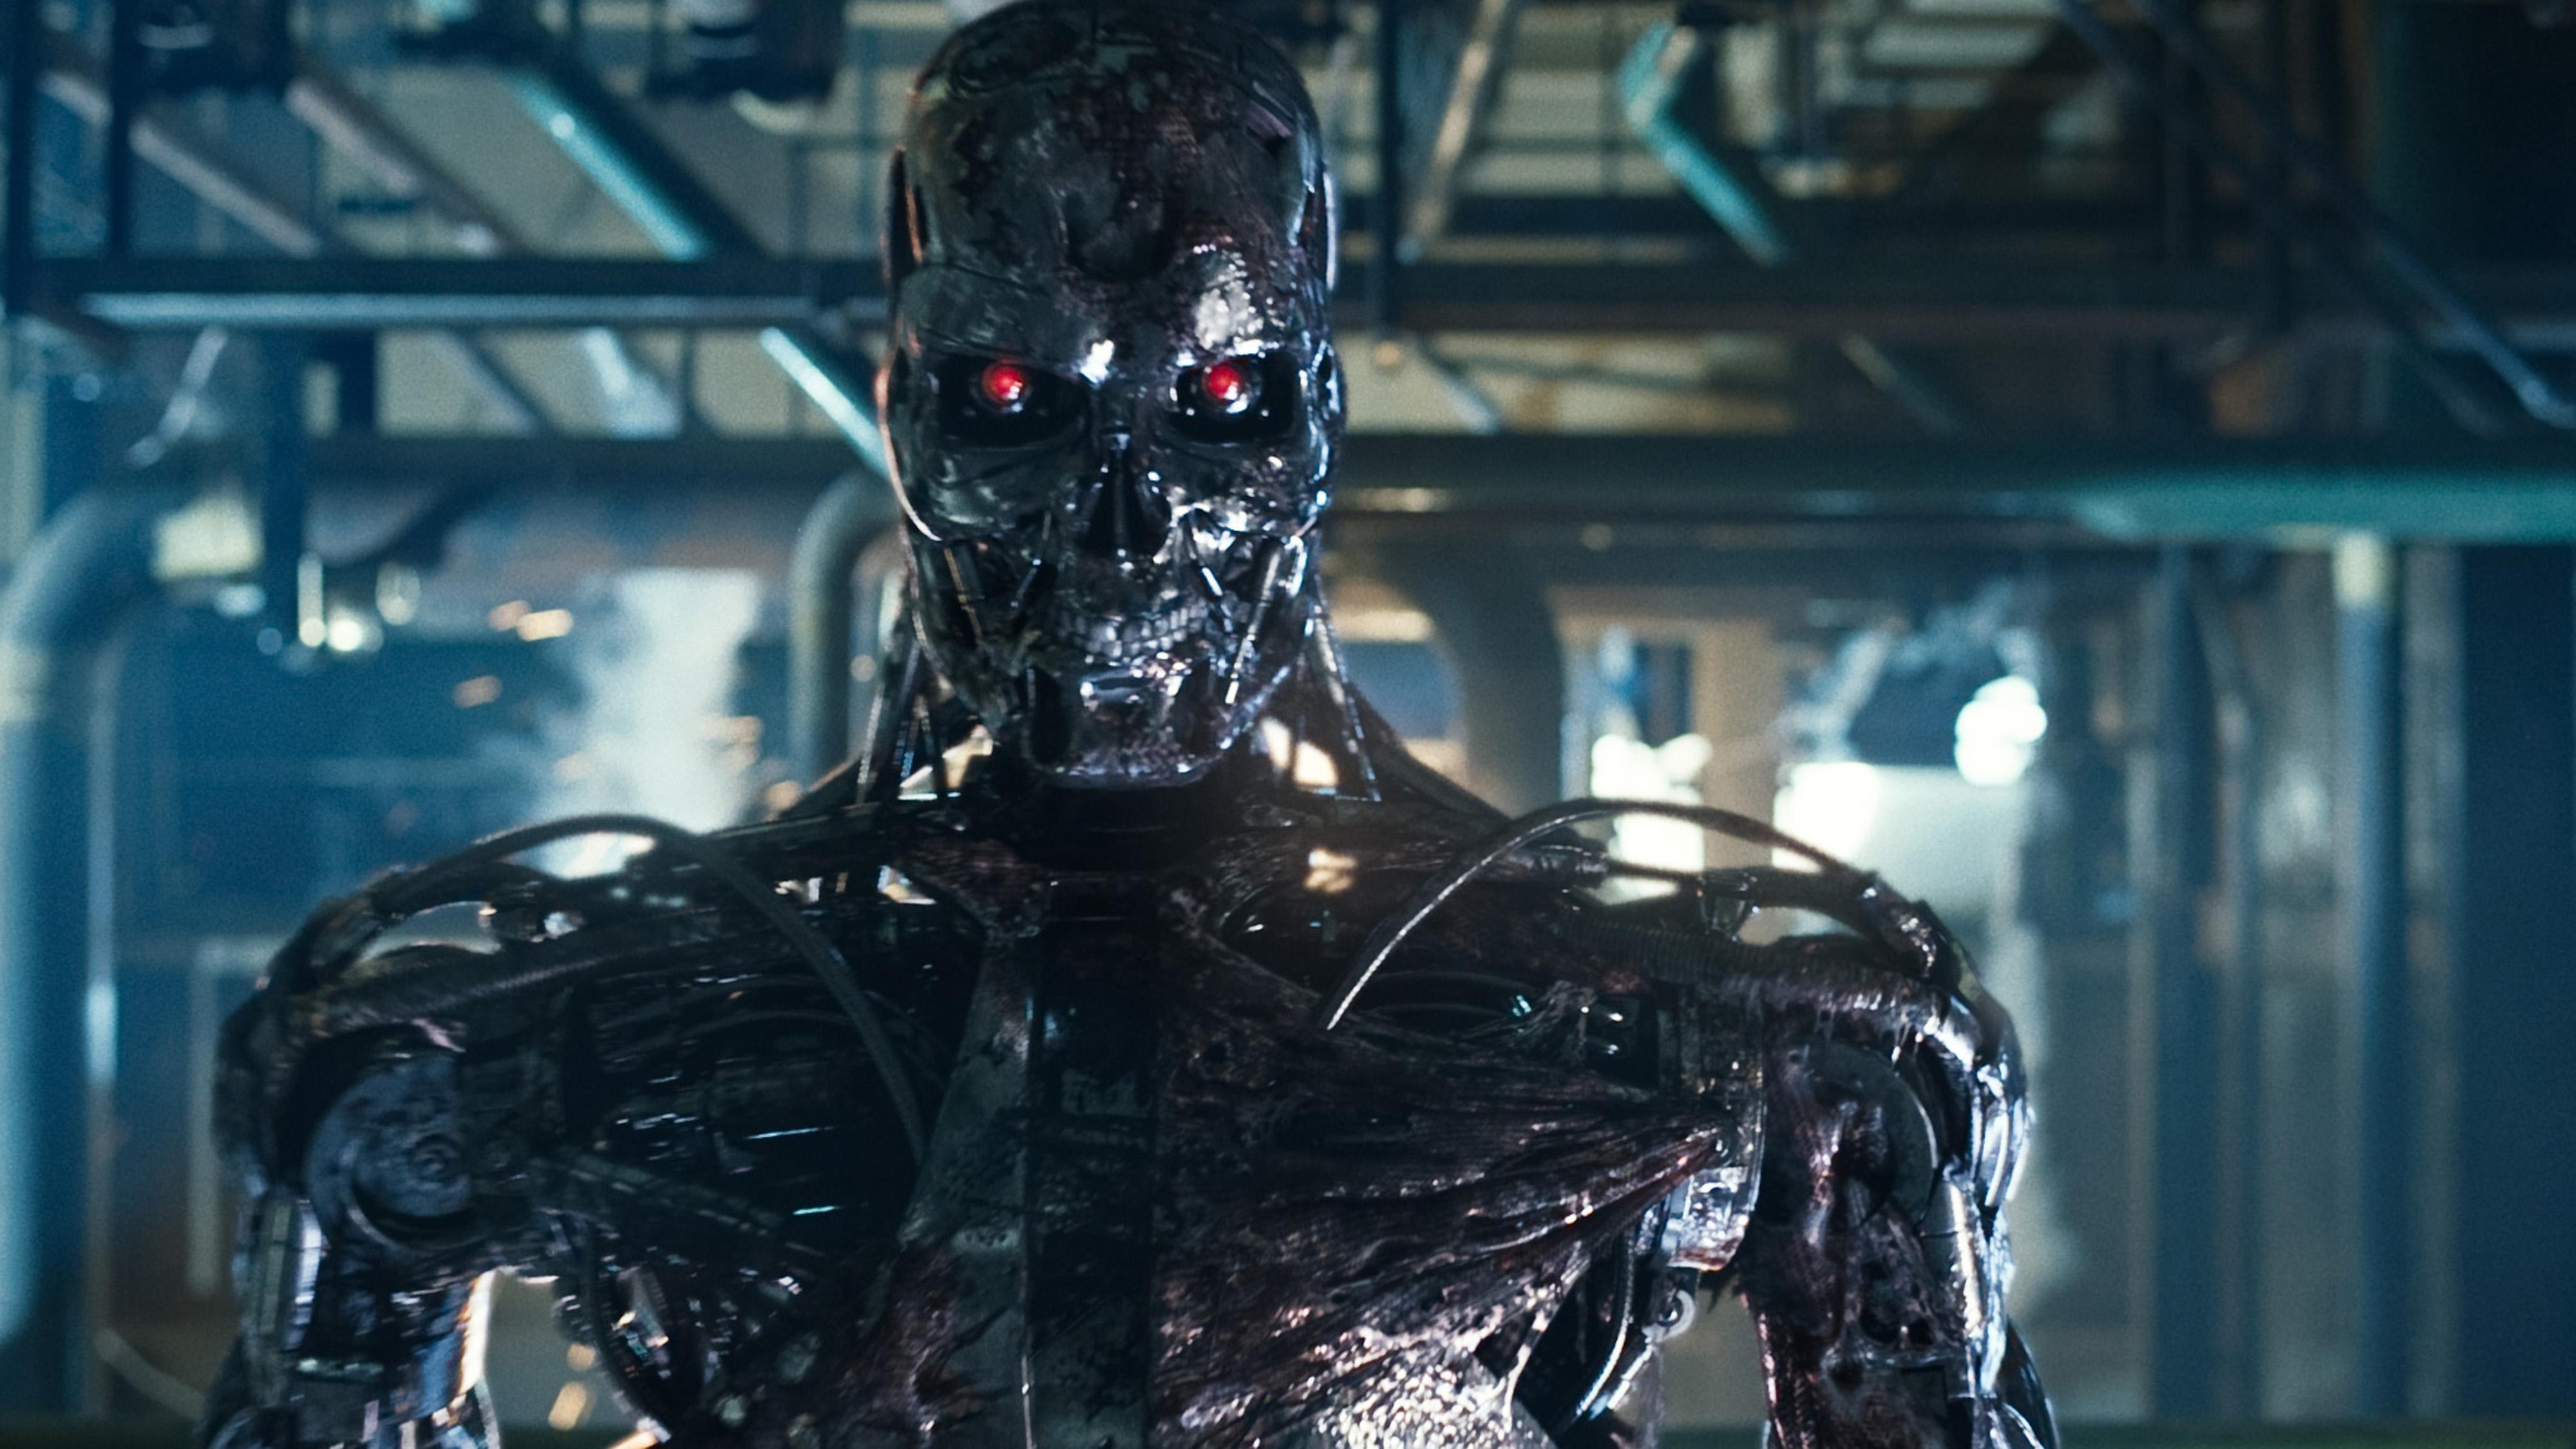     Killerroboter, som det ses i Terminator-filmen, är ett hett ämne bland teknikentusiaster